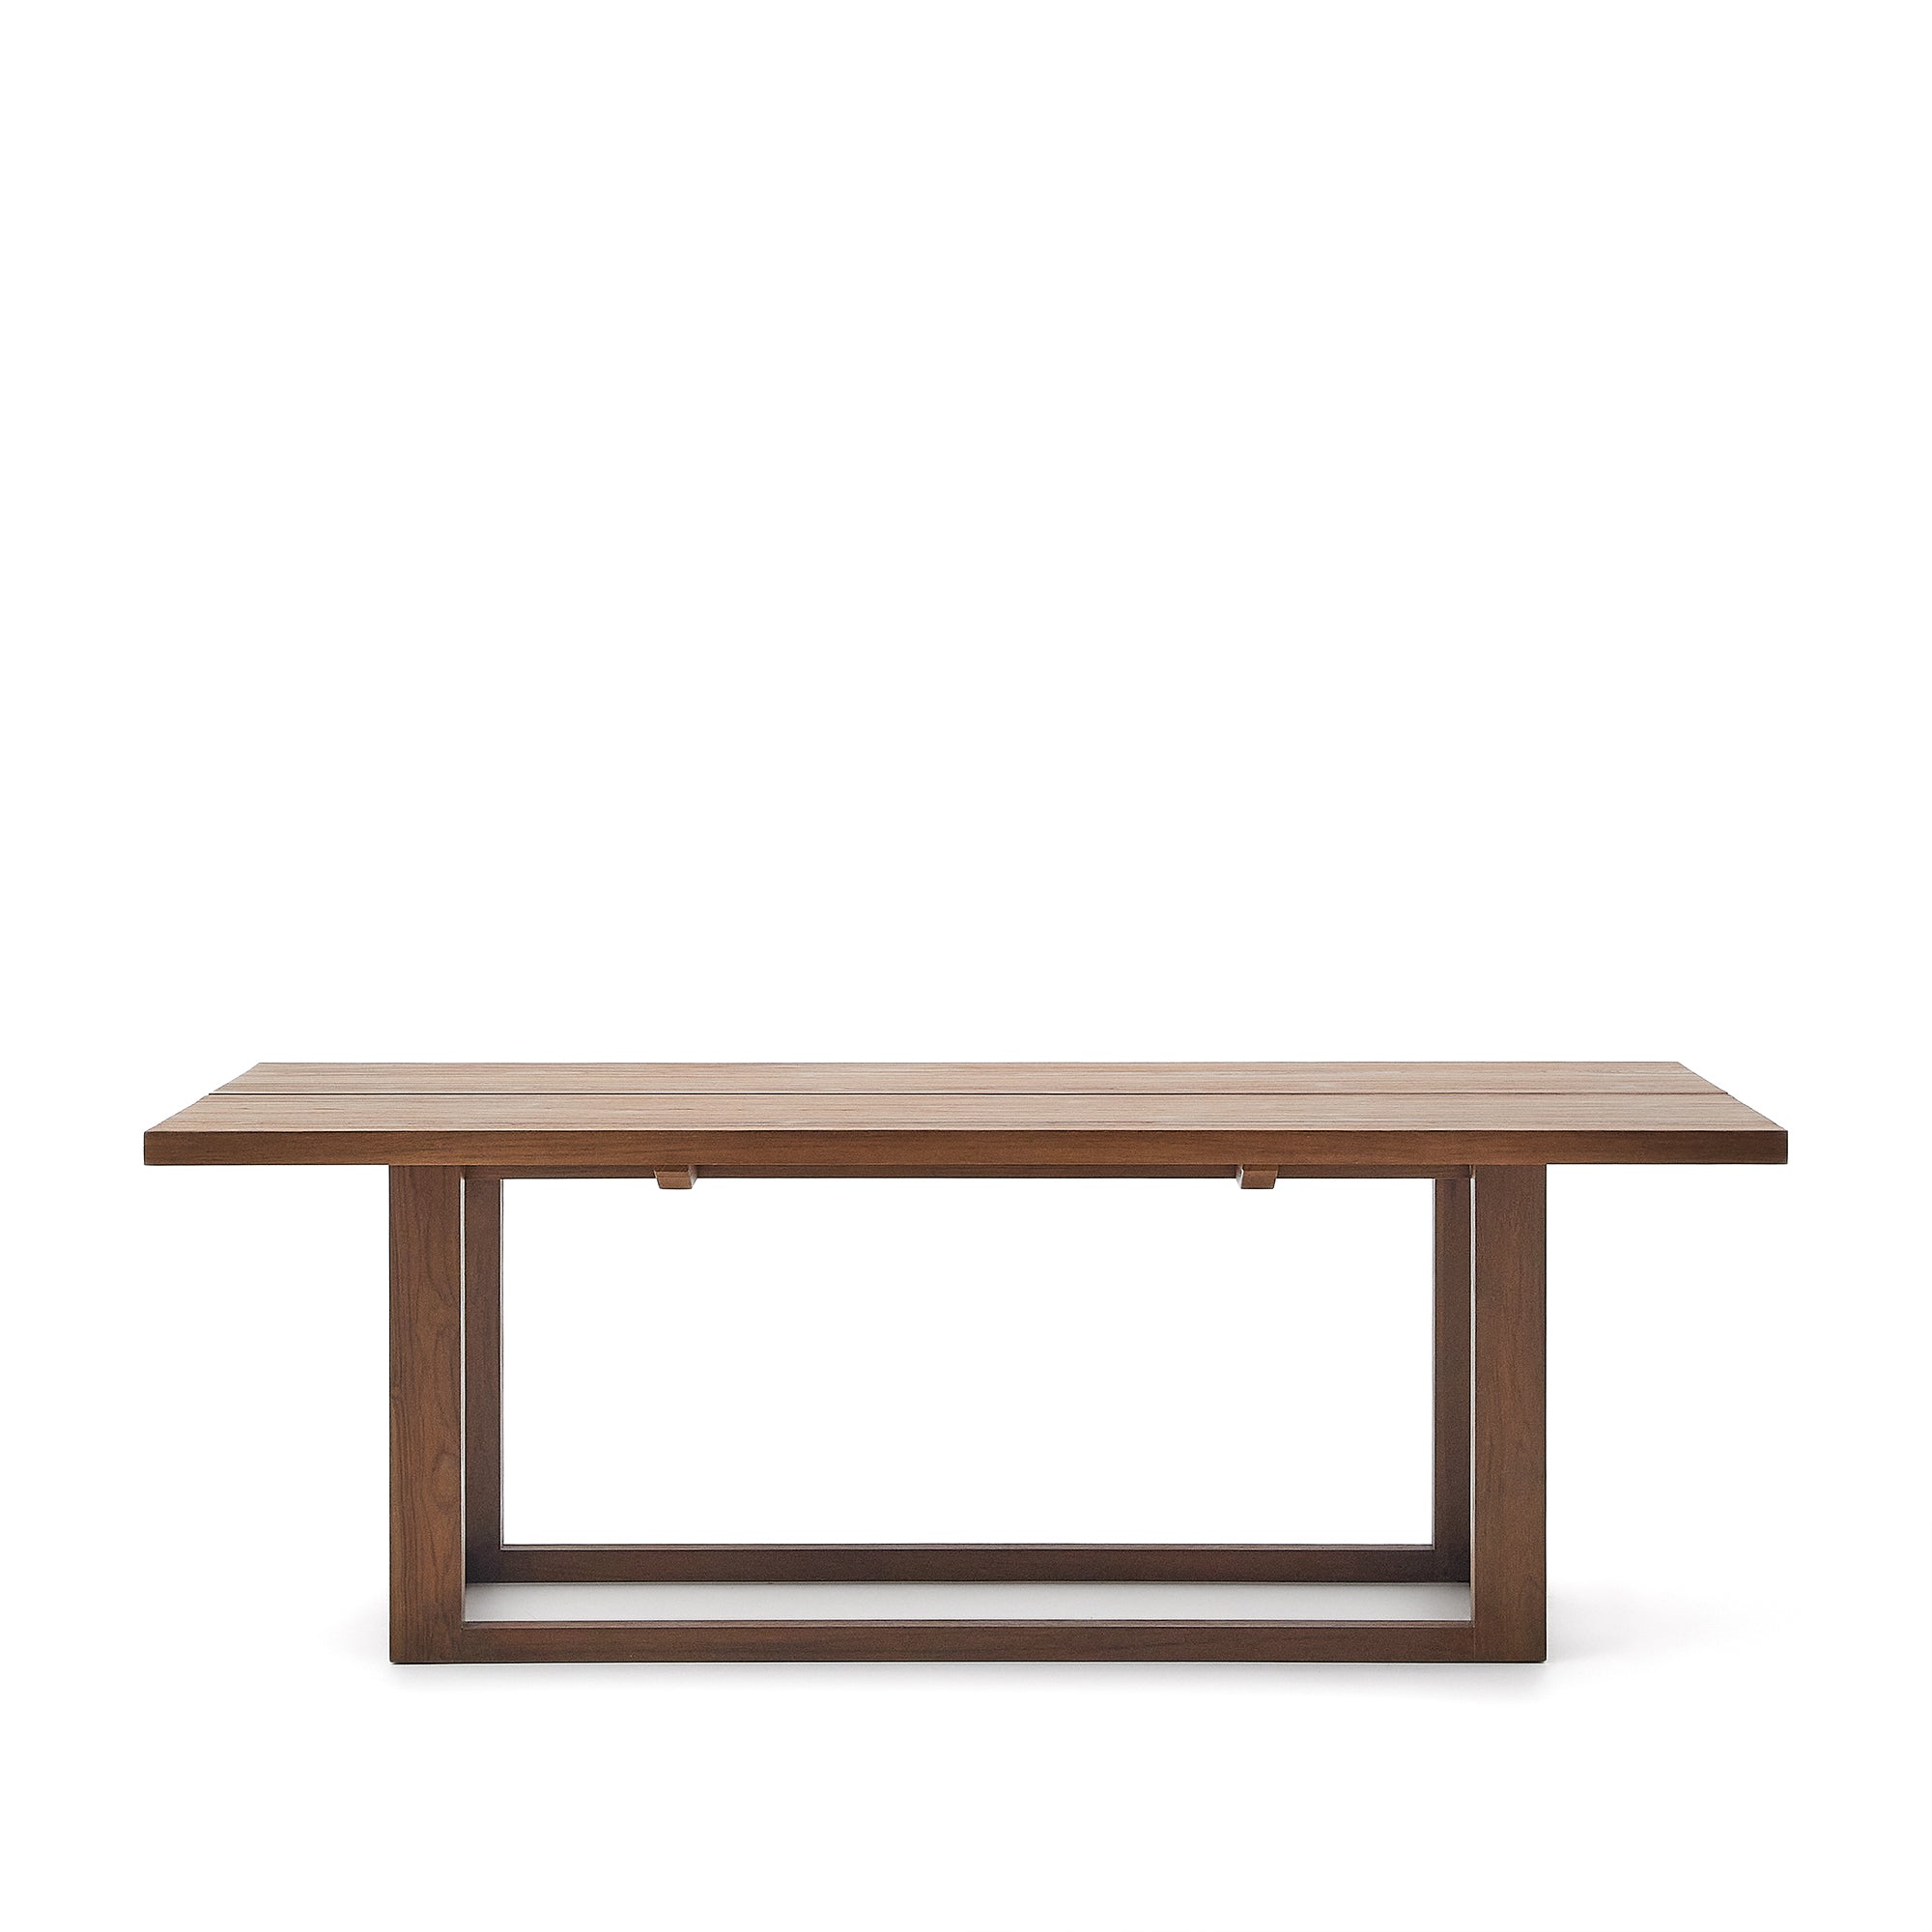 Sashi asztal, készült tömör teakfából, 220 x 100 cm